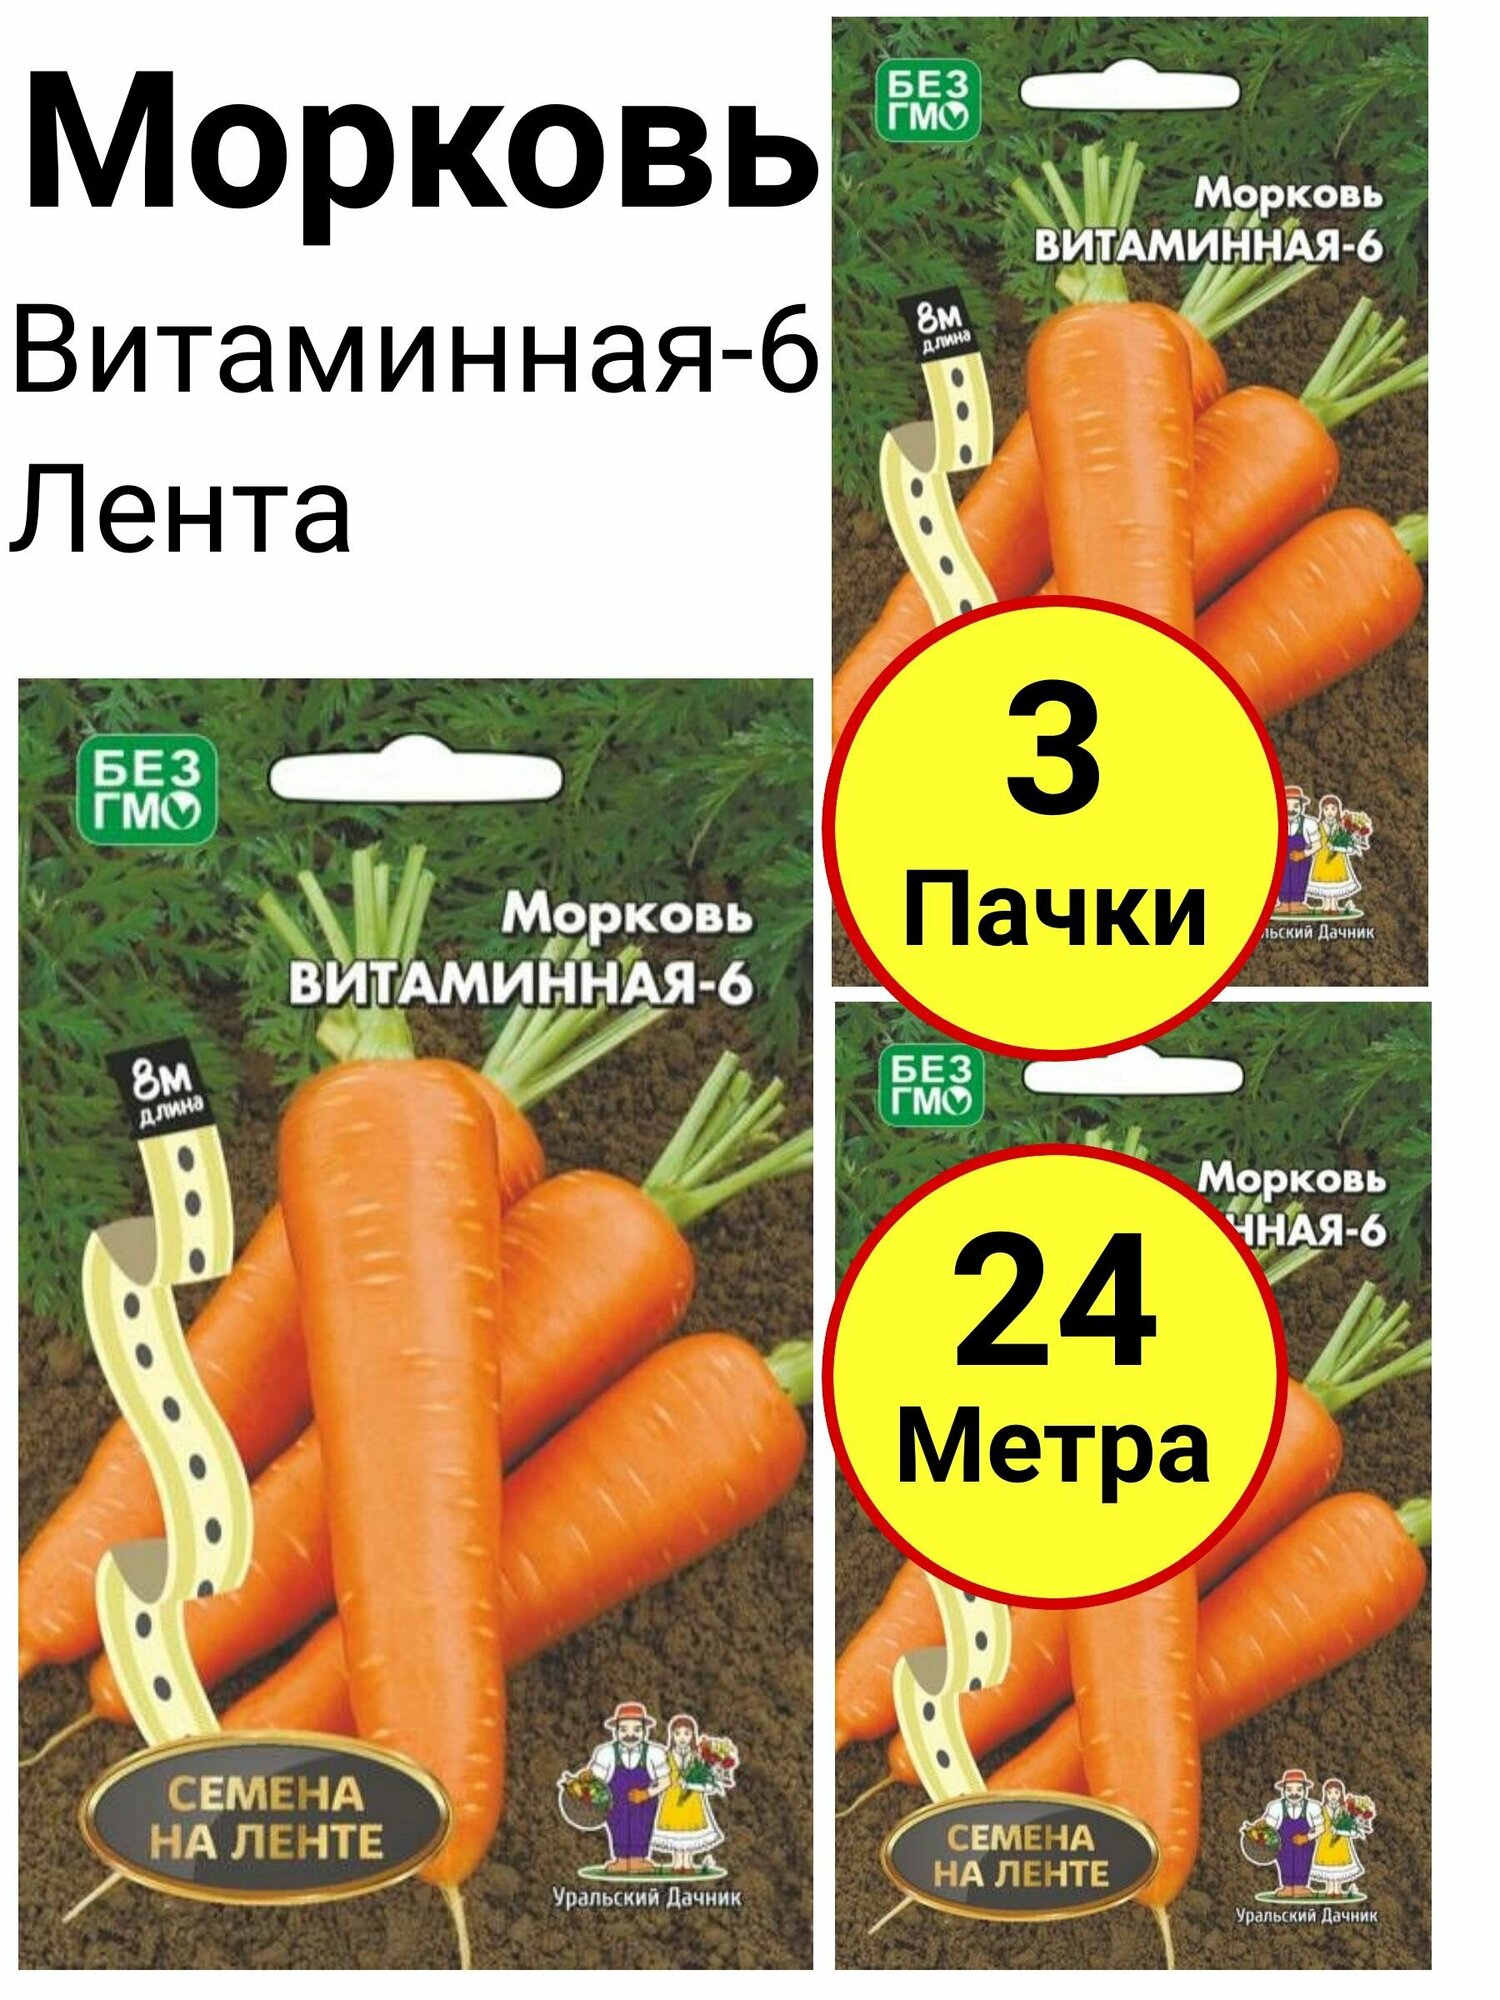 Морковь Витаминная-6 Лента 8 метров Уральский дачник - 3 пачки